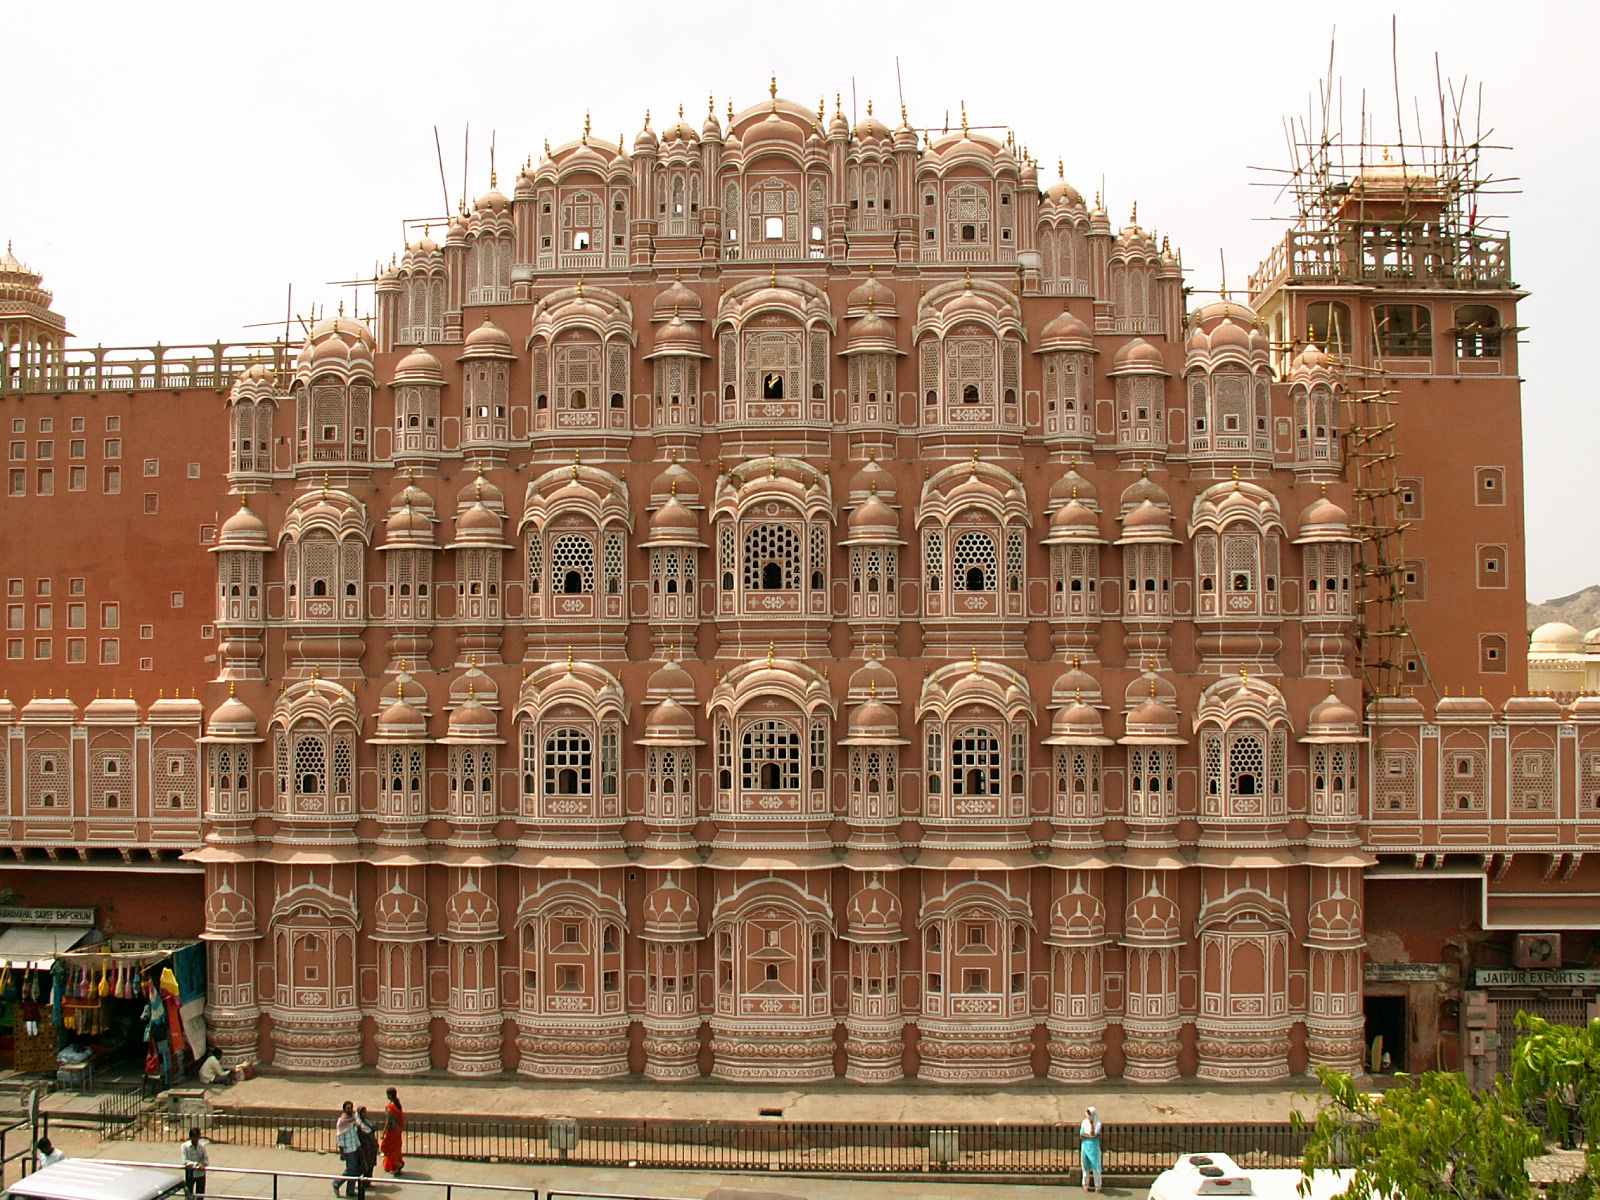 Travel Information, History, Story and Image of Hawa Mahal, Jaipur